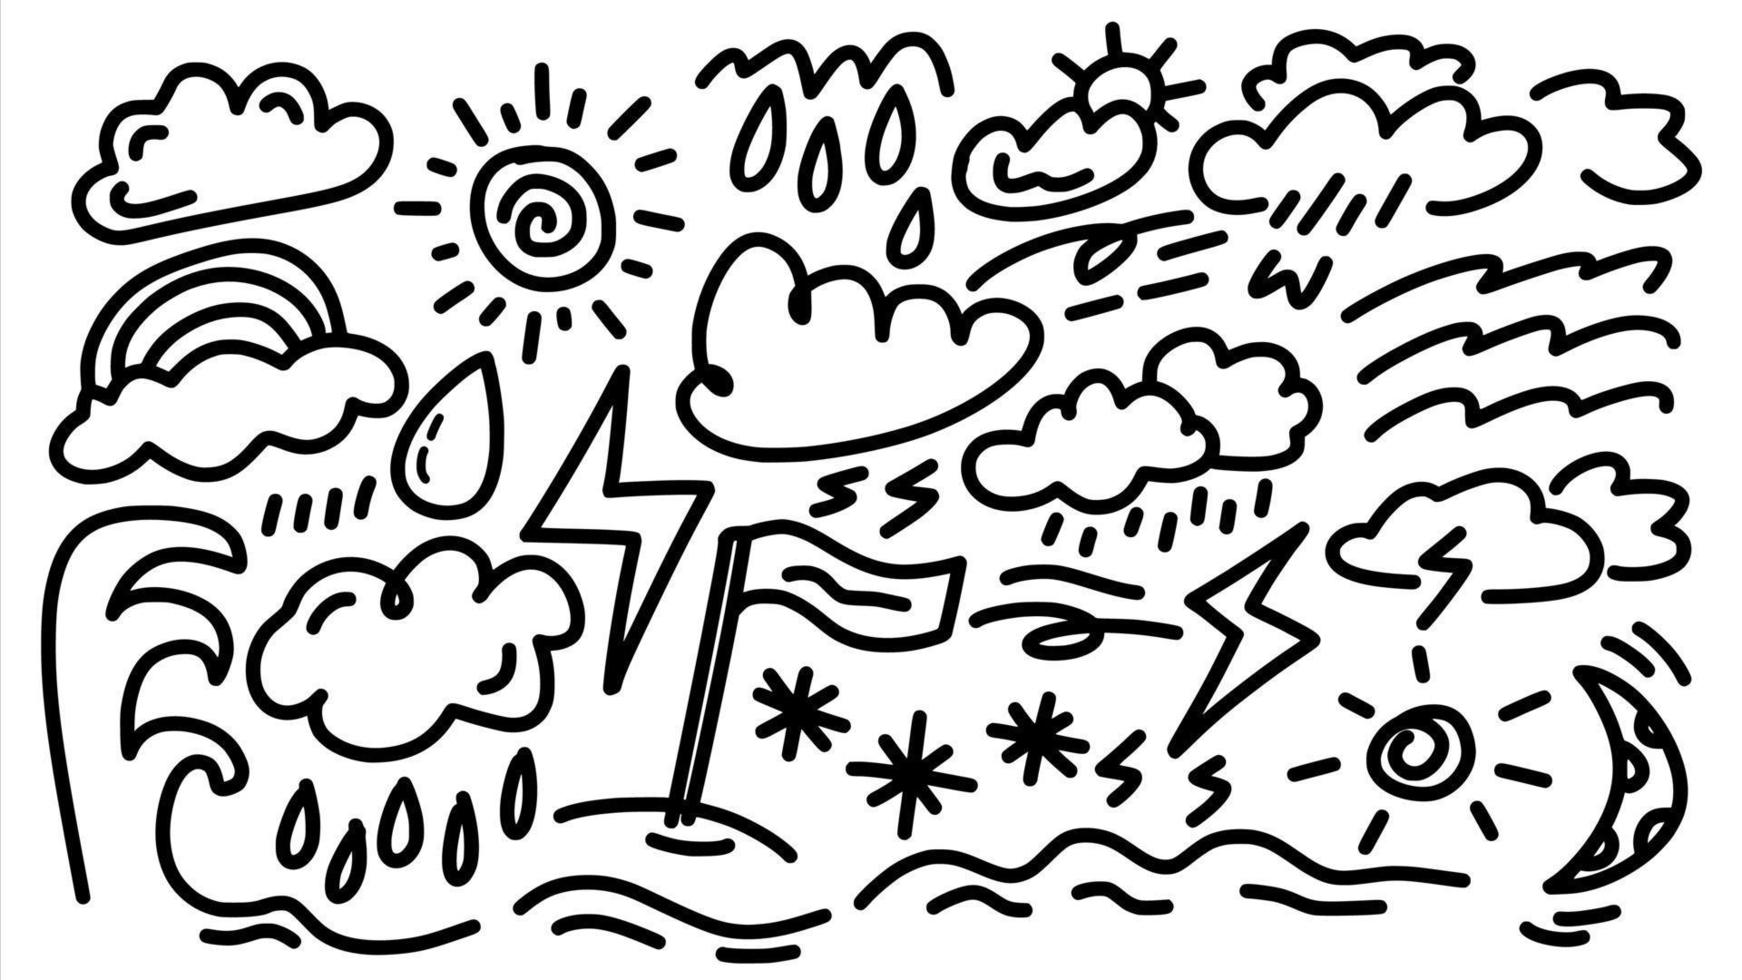 icona delle previsioni del tempo e della situazione della spiaggia impostata con doodle fumetti disegnati a mano contorni in stile arte collezione di modelli vettoriali per fumetti da colorare e adesivi